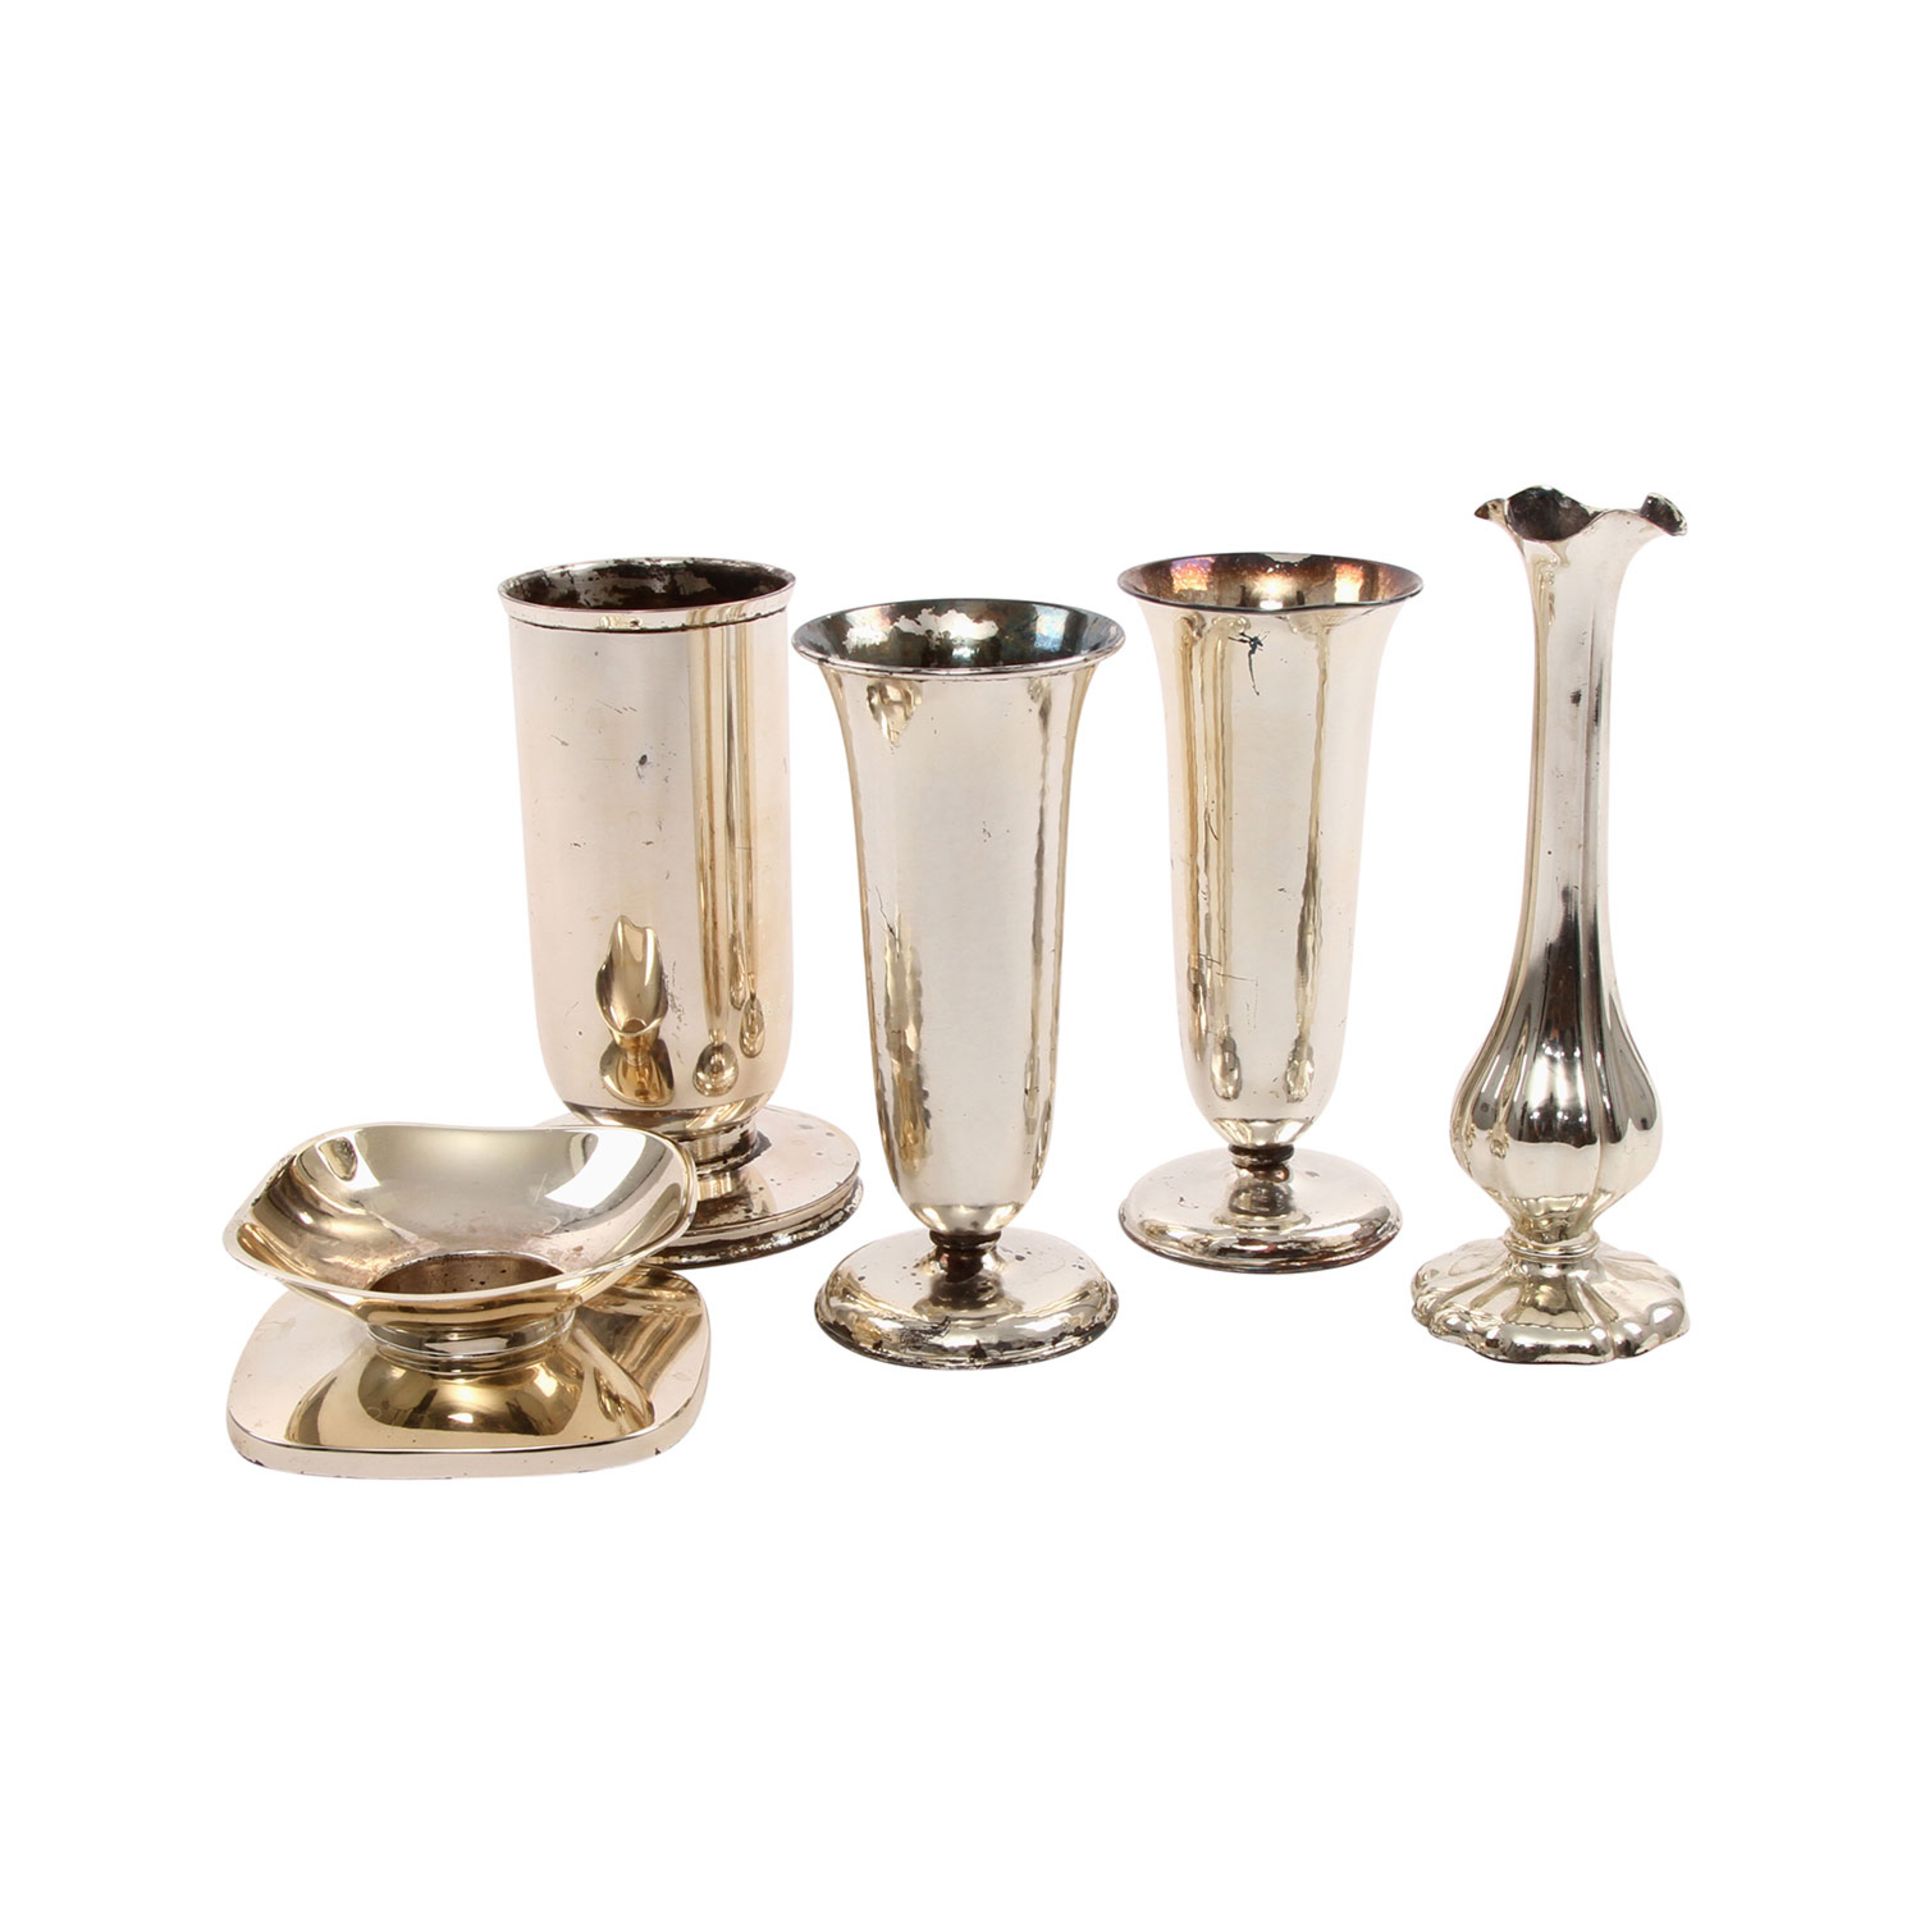 DEUTSCH Konvolut Silber, 5tlg., 20.Jh. bestehend aus 4 Vasen unterschiedlichen Herstellers, Form,